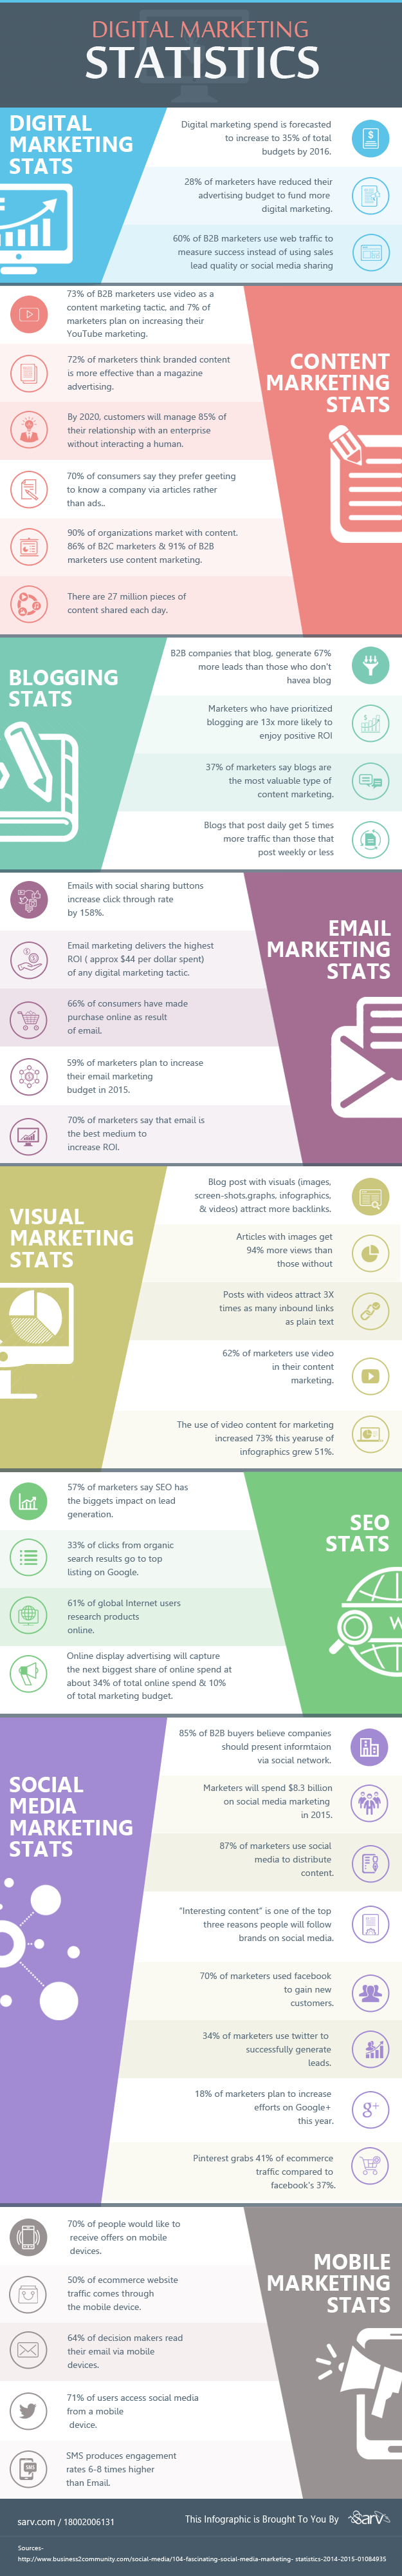 Digital-Marketing-Statistics